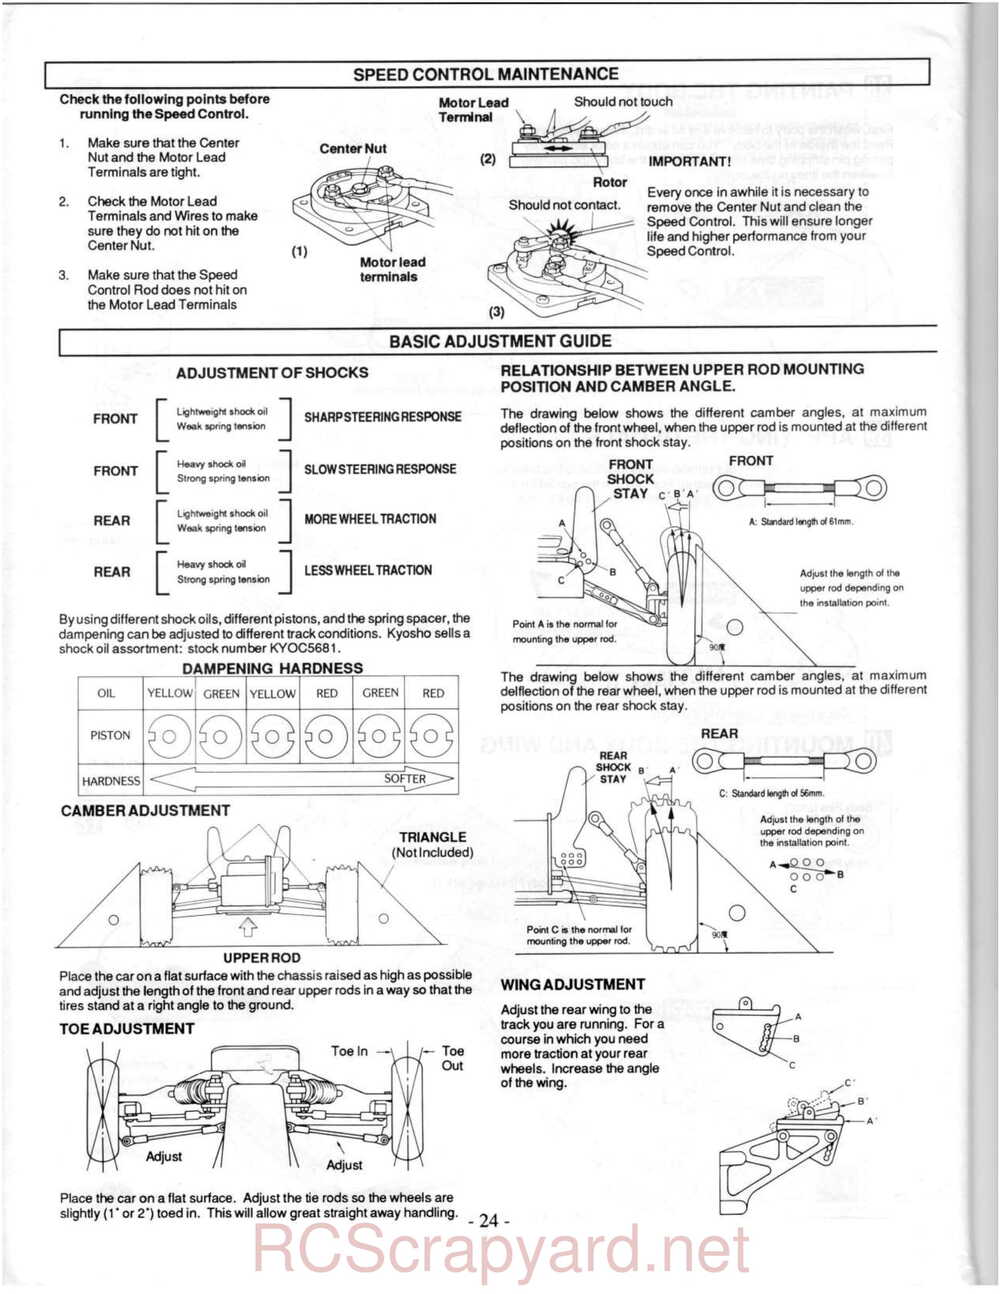 Kyosho - 3118 - Ultima-II - Manual - Page 24